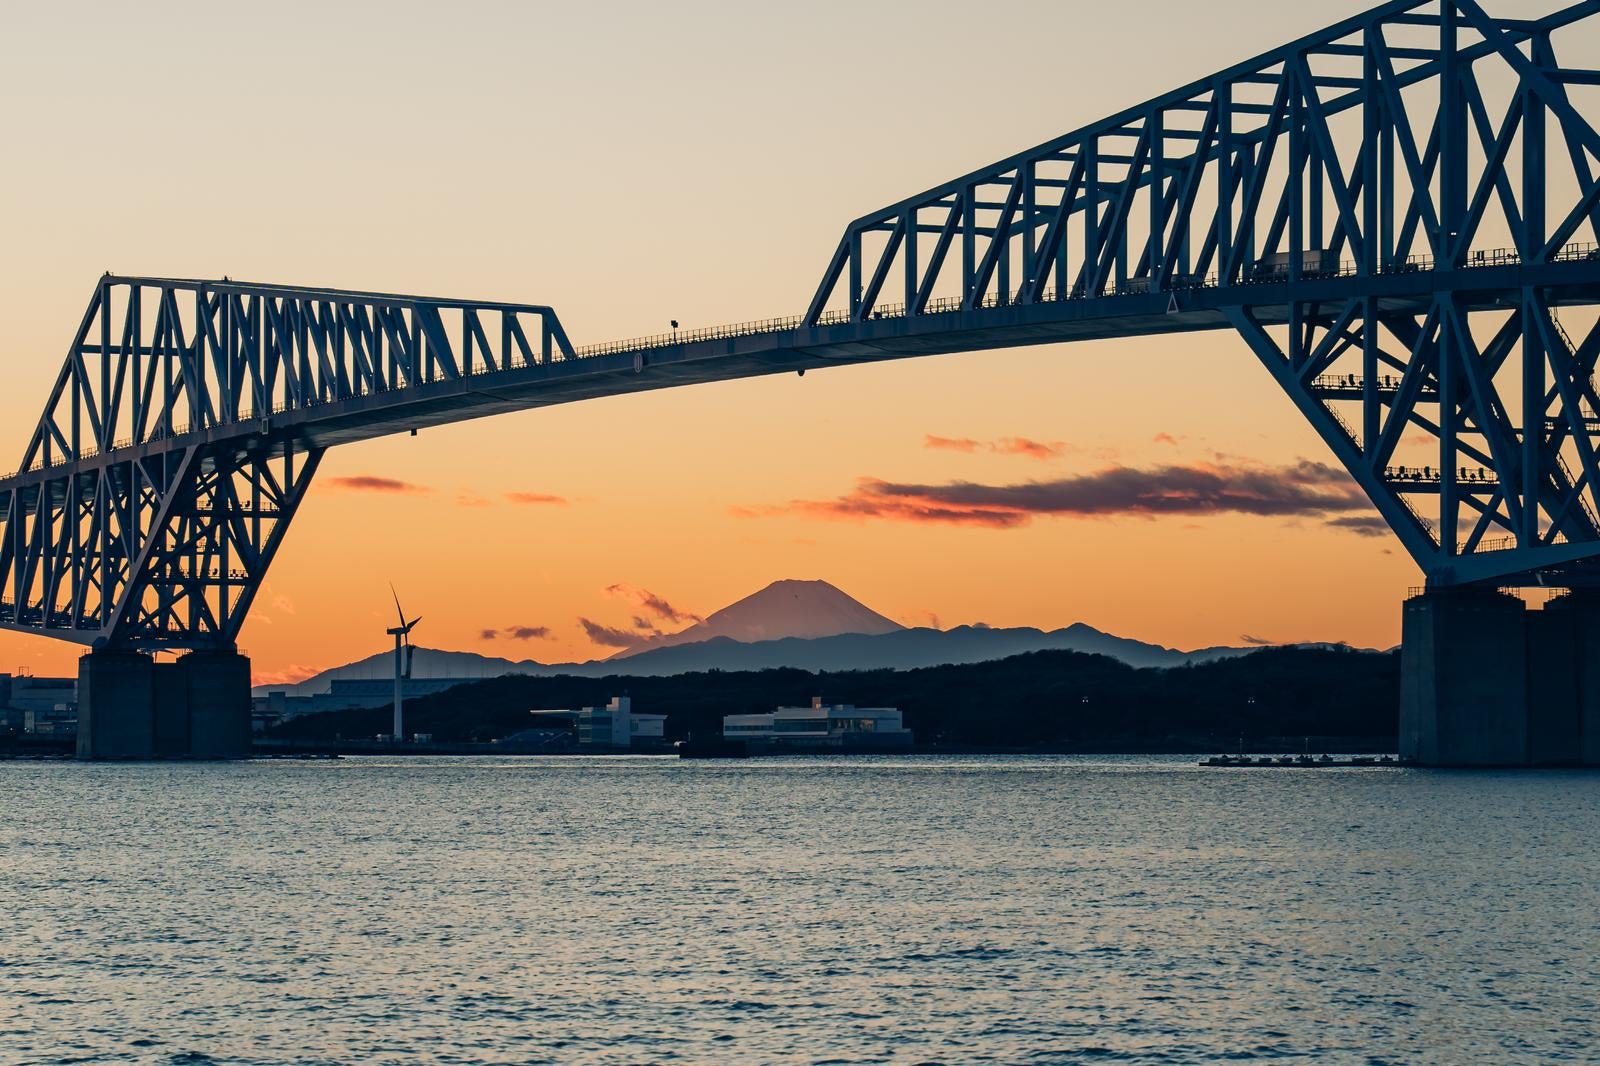 「ゲートブリッジと富士山のコラボレーション」の写真